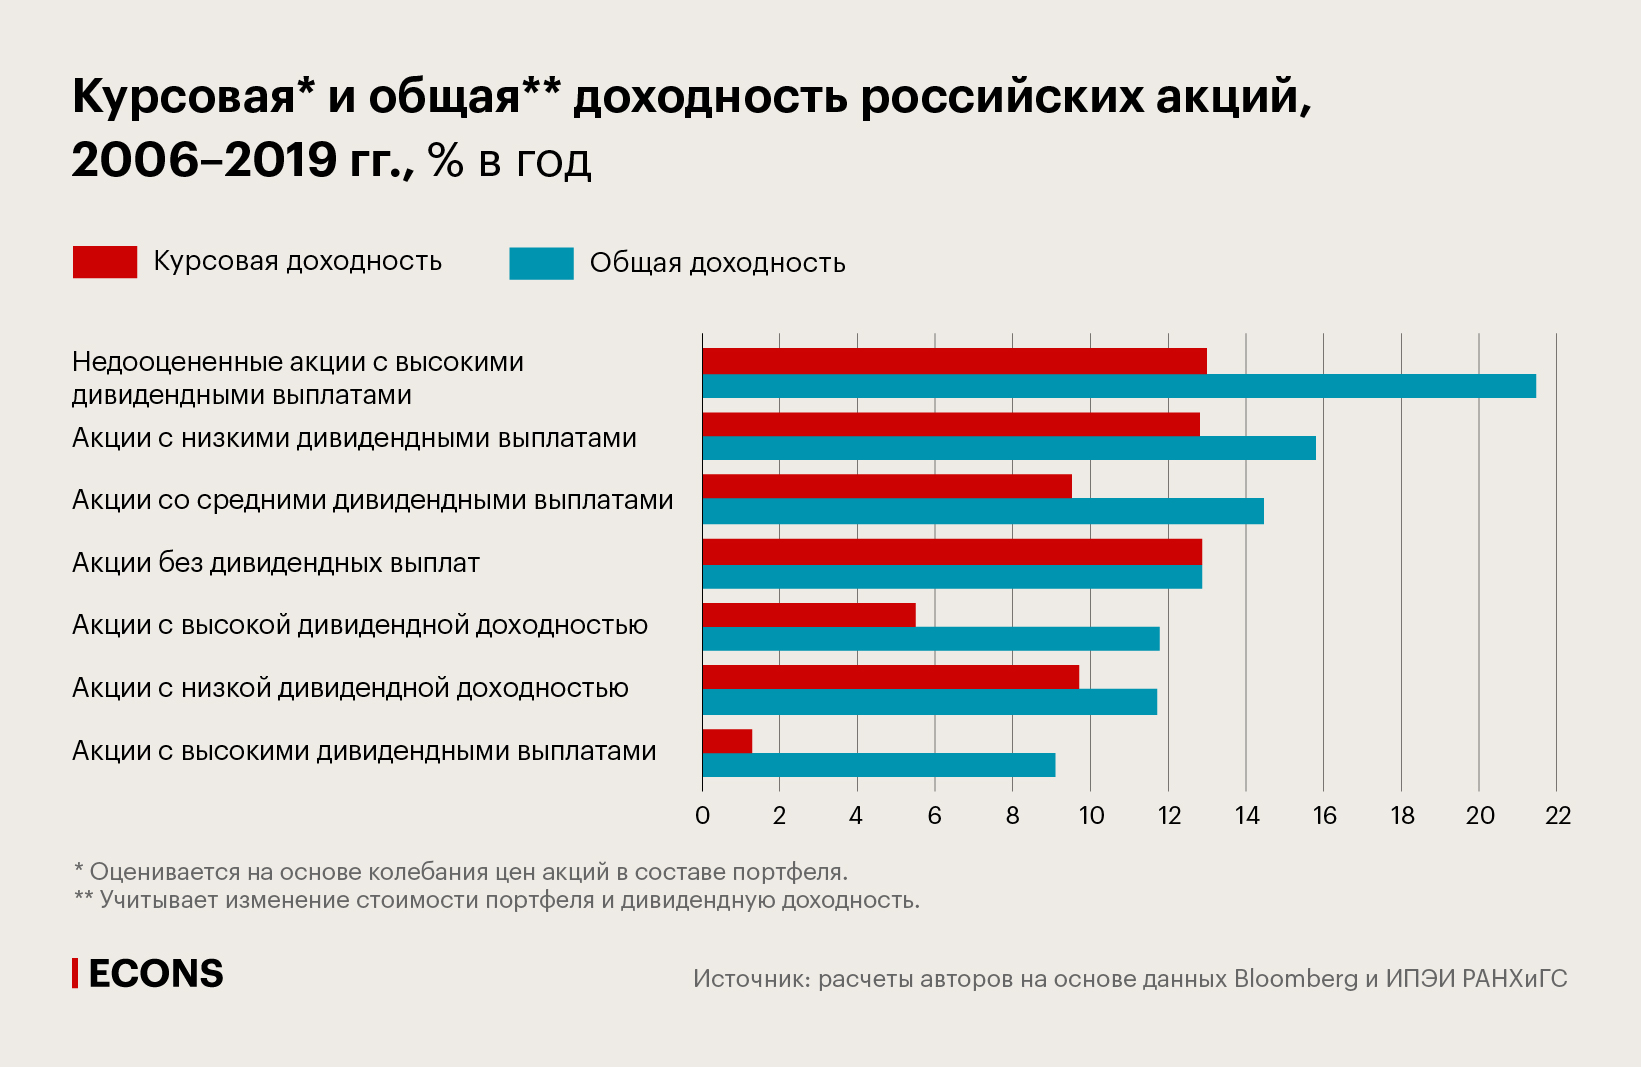 Курсовая и общая доходность российских акций, 2006–2019 гг., % в год